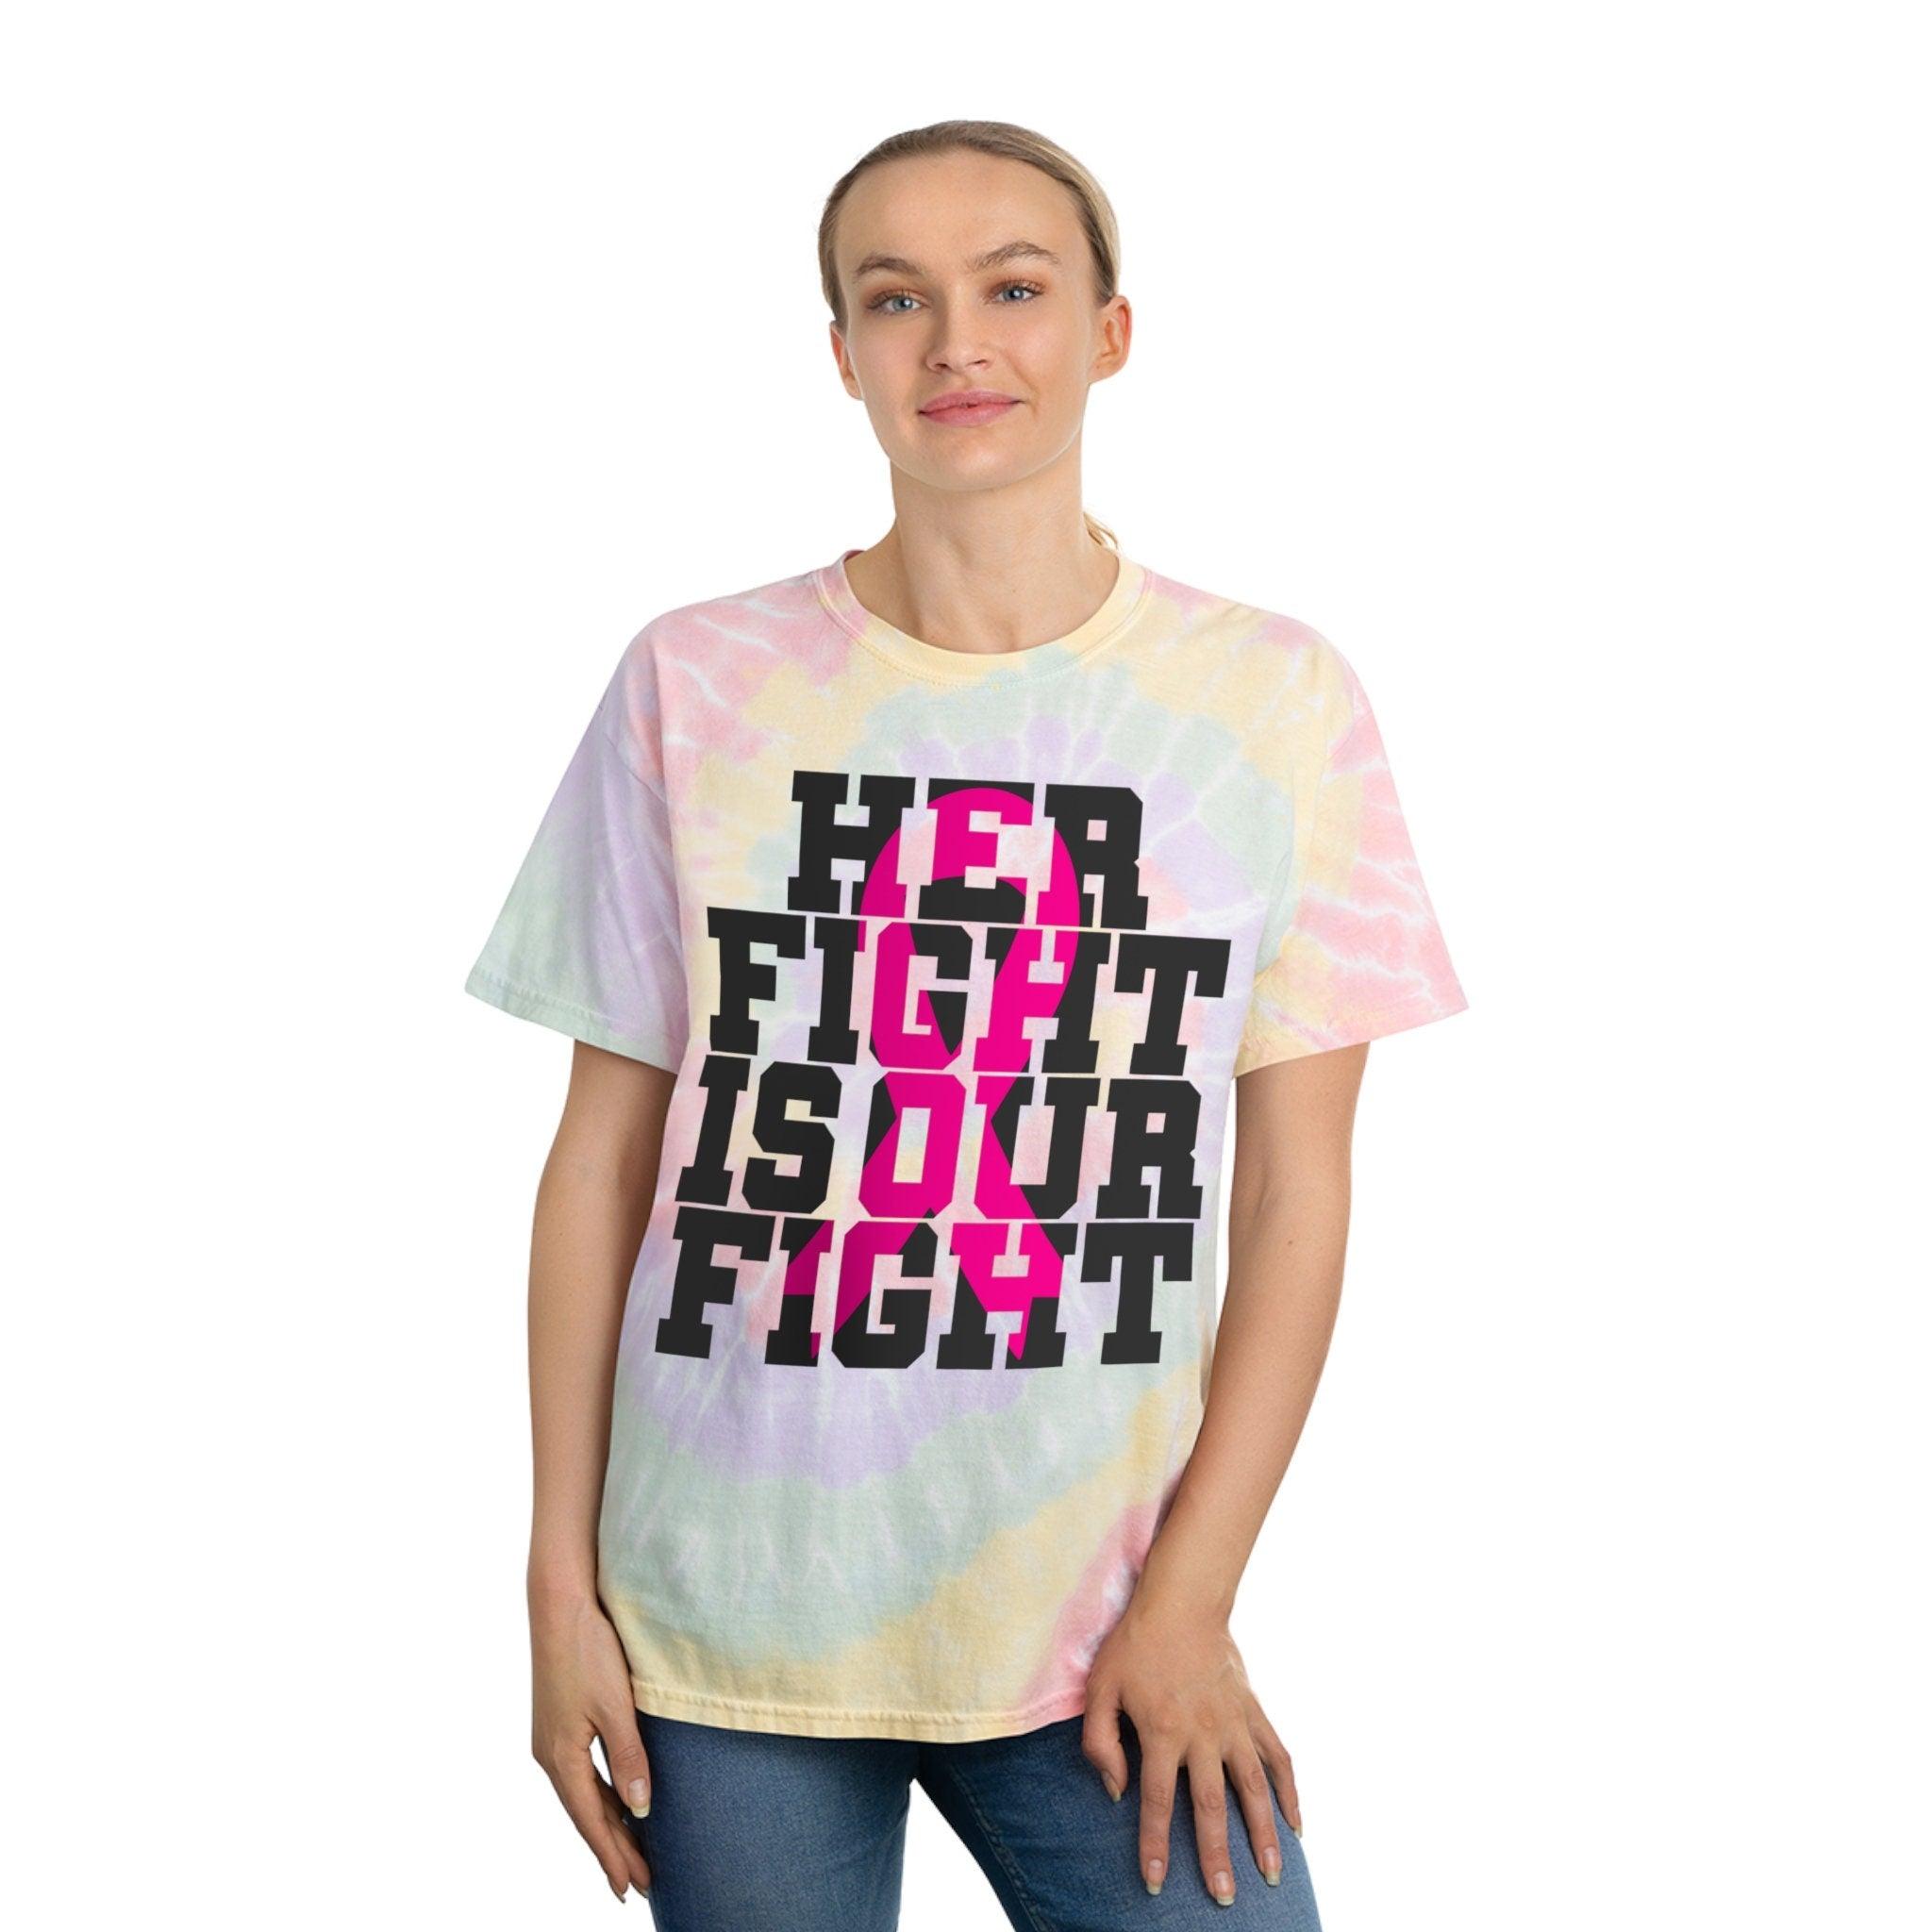 Ее борьба - это наша борьба. Рубашка с раком груди, Рубашка для жертв рака, Информация о раке молочной железы, Футболка с розовой лентой, спираль - plusminusco.com